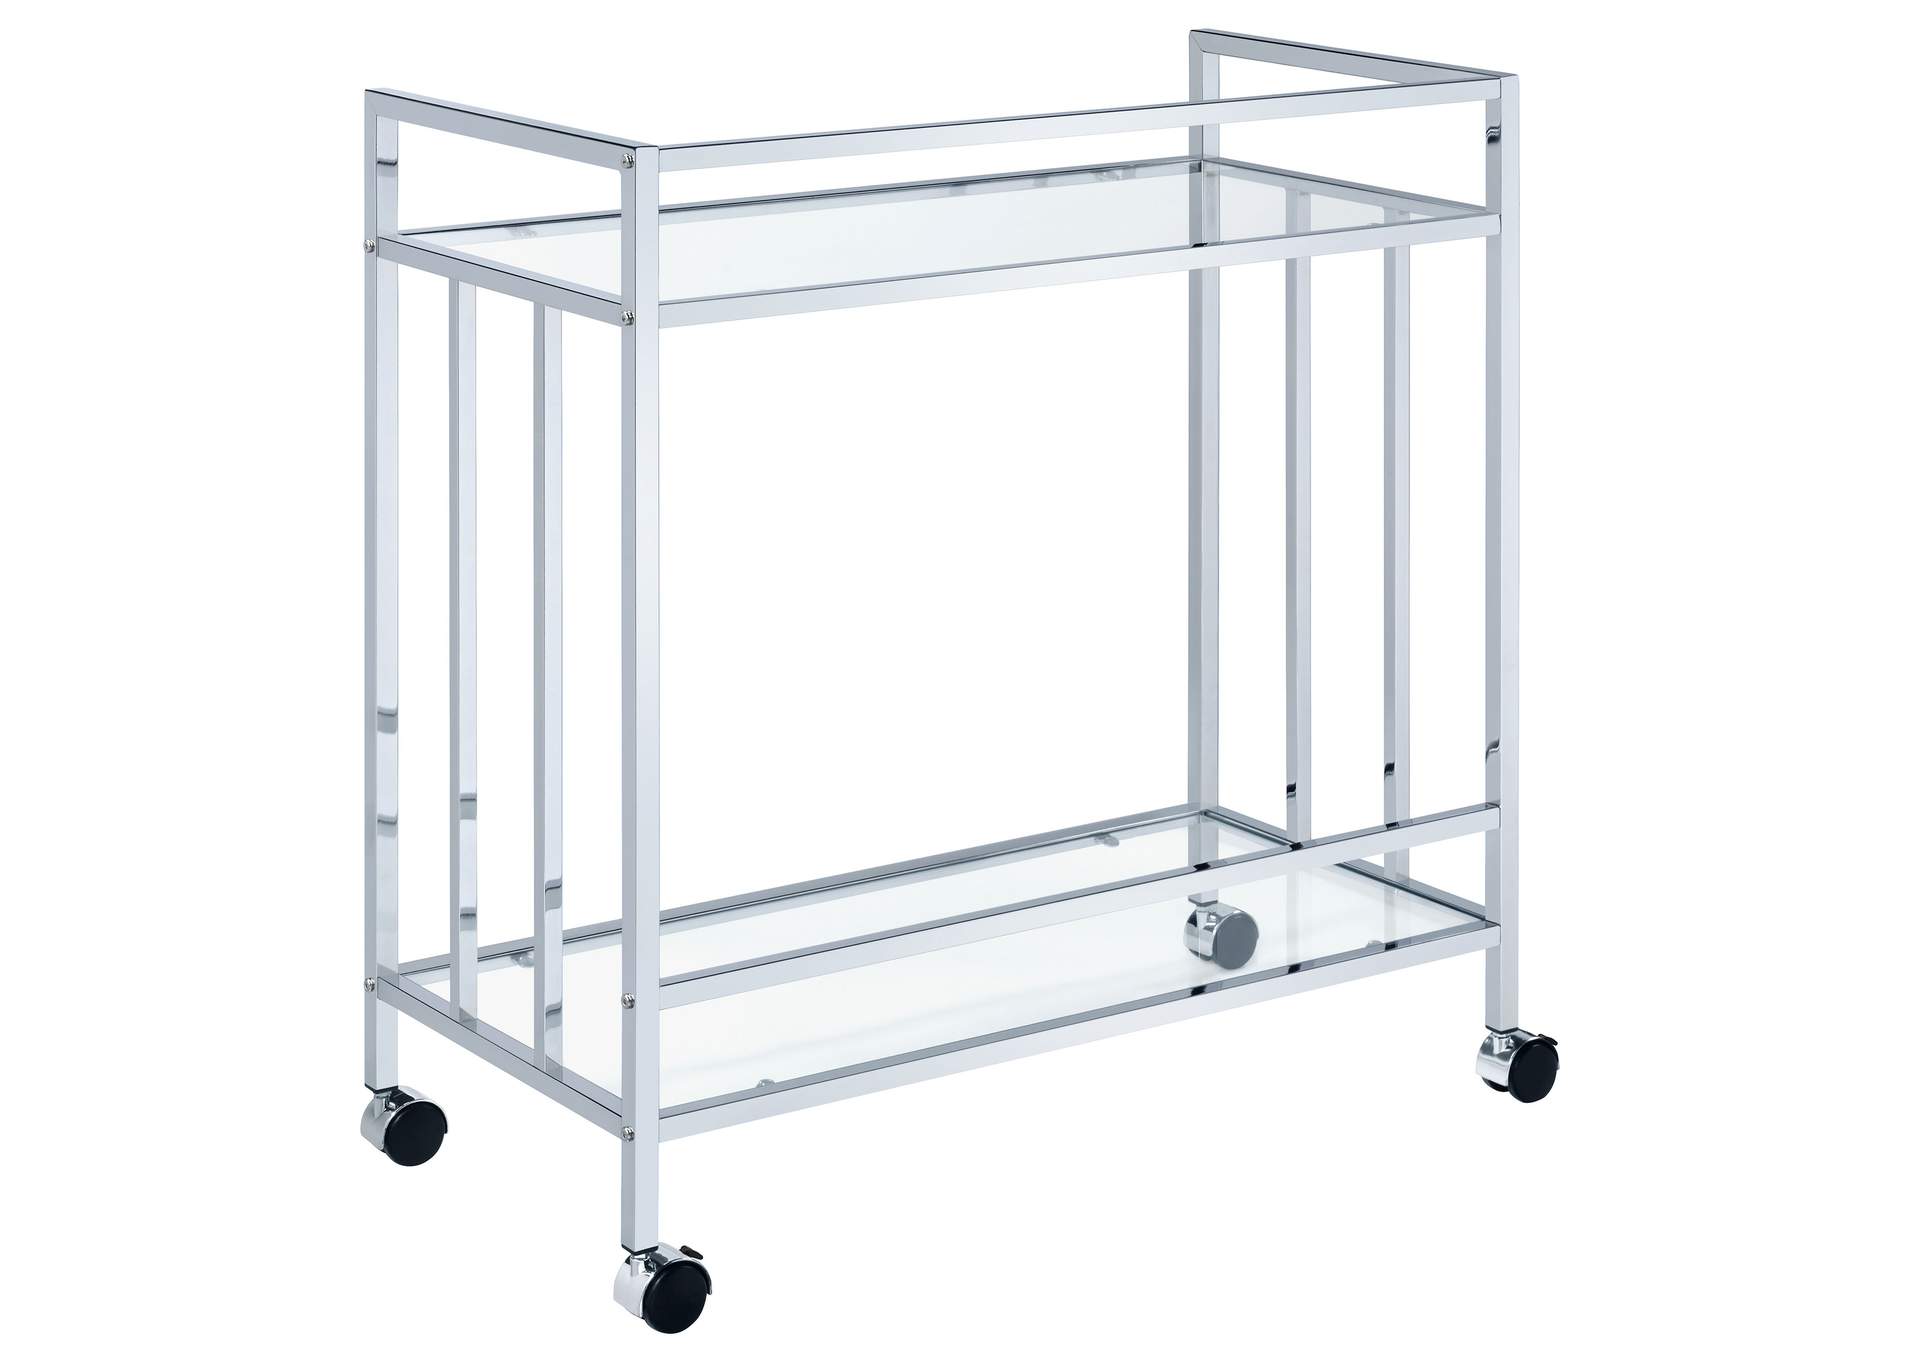 Cara Rectangular Glass Bar Cart Chrome,Coaster Furniture